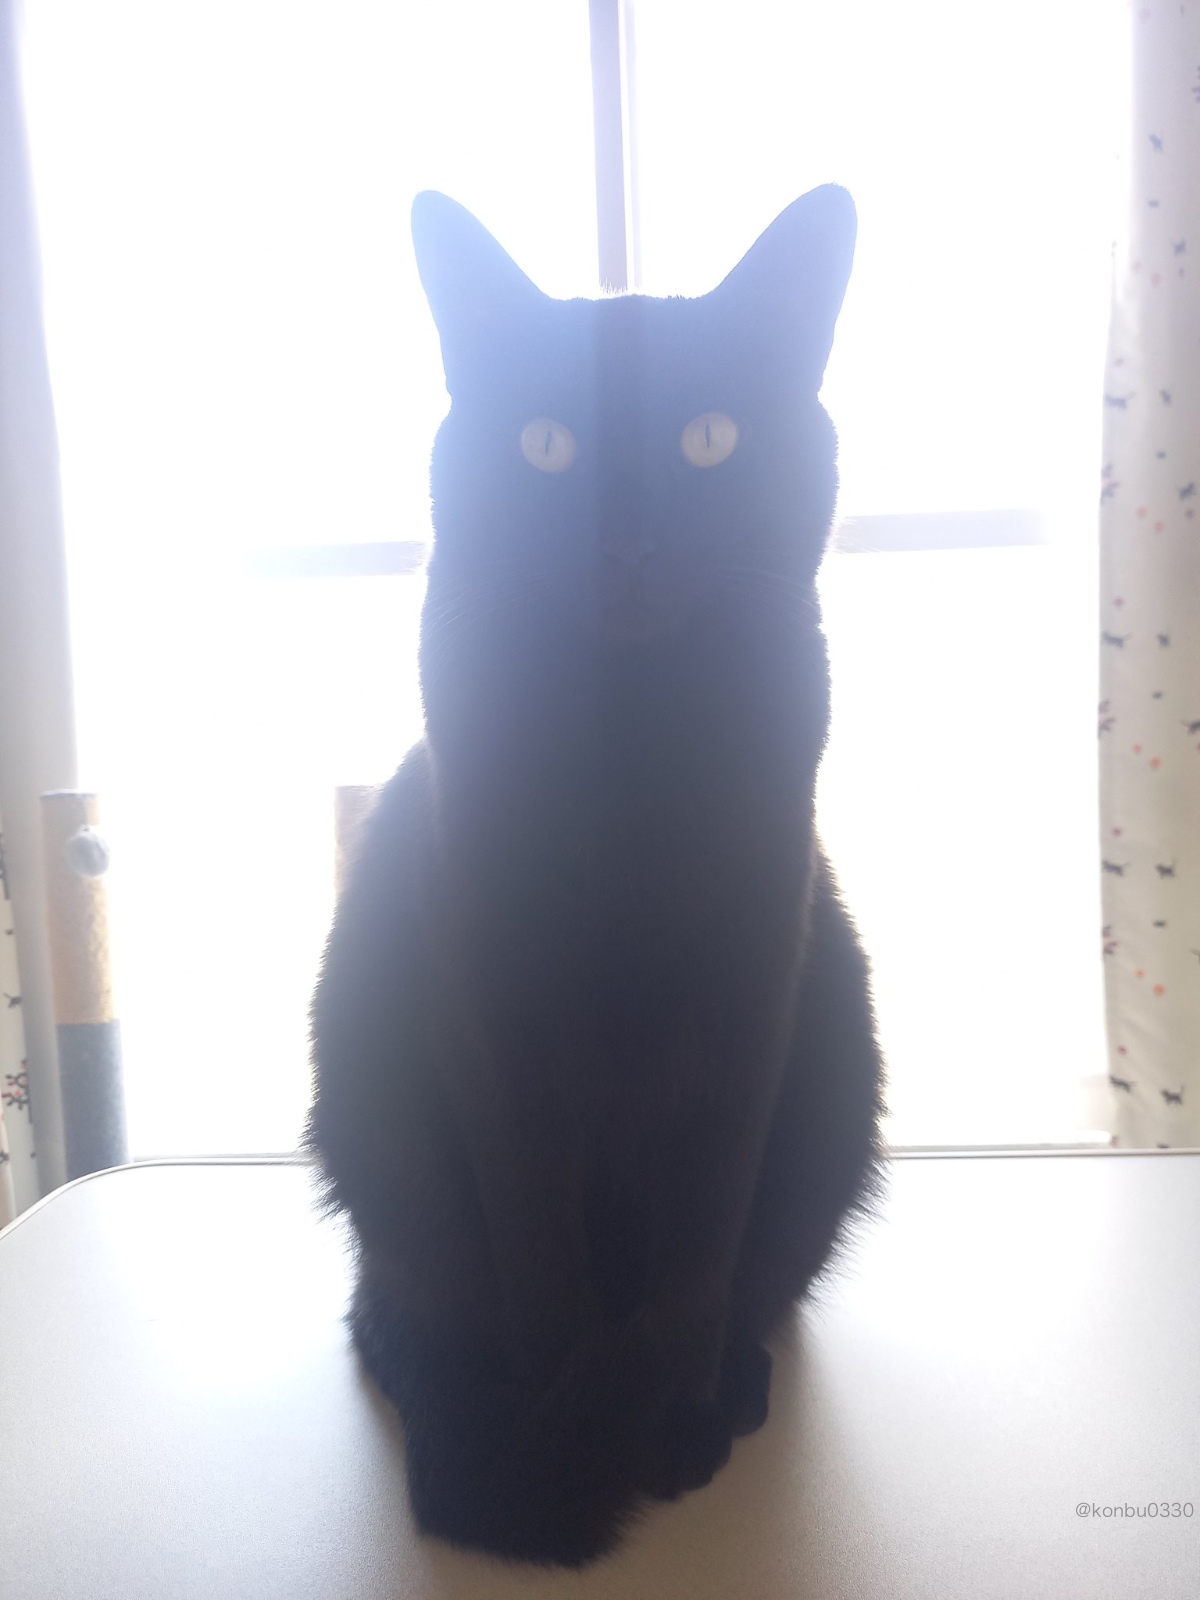 背景が透けているように見える黒猫